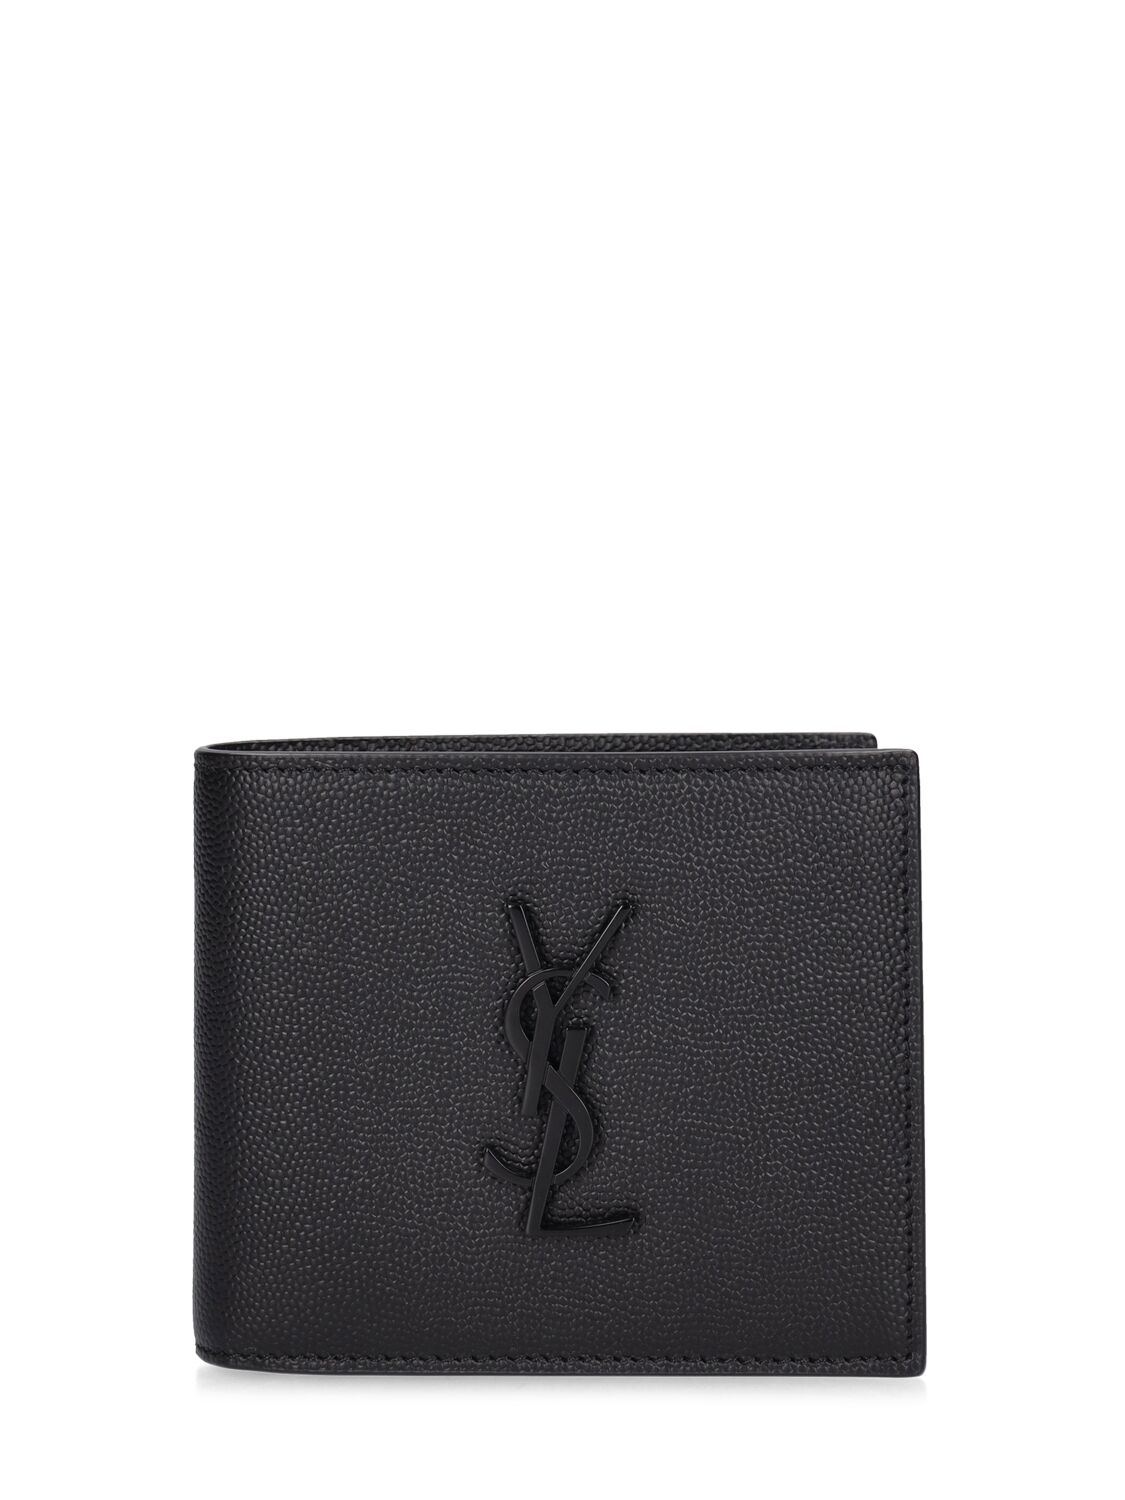 Saint Laurent Cassandre East/west Leather Wallet In Black